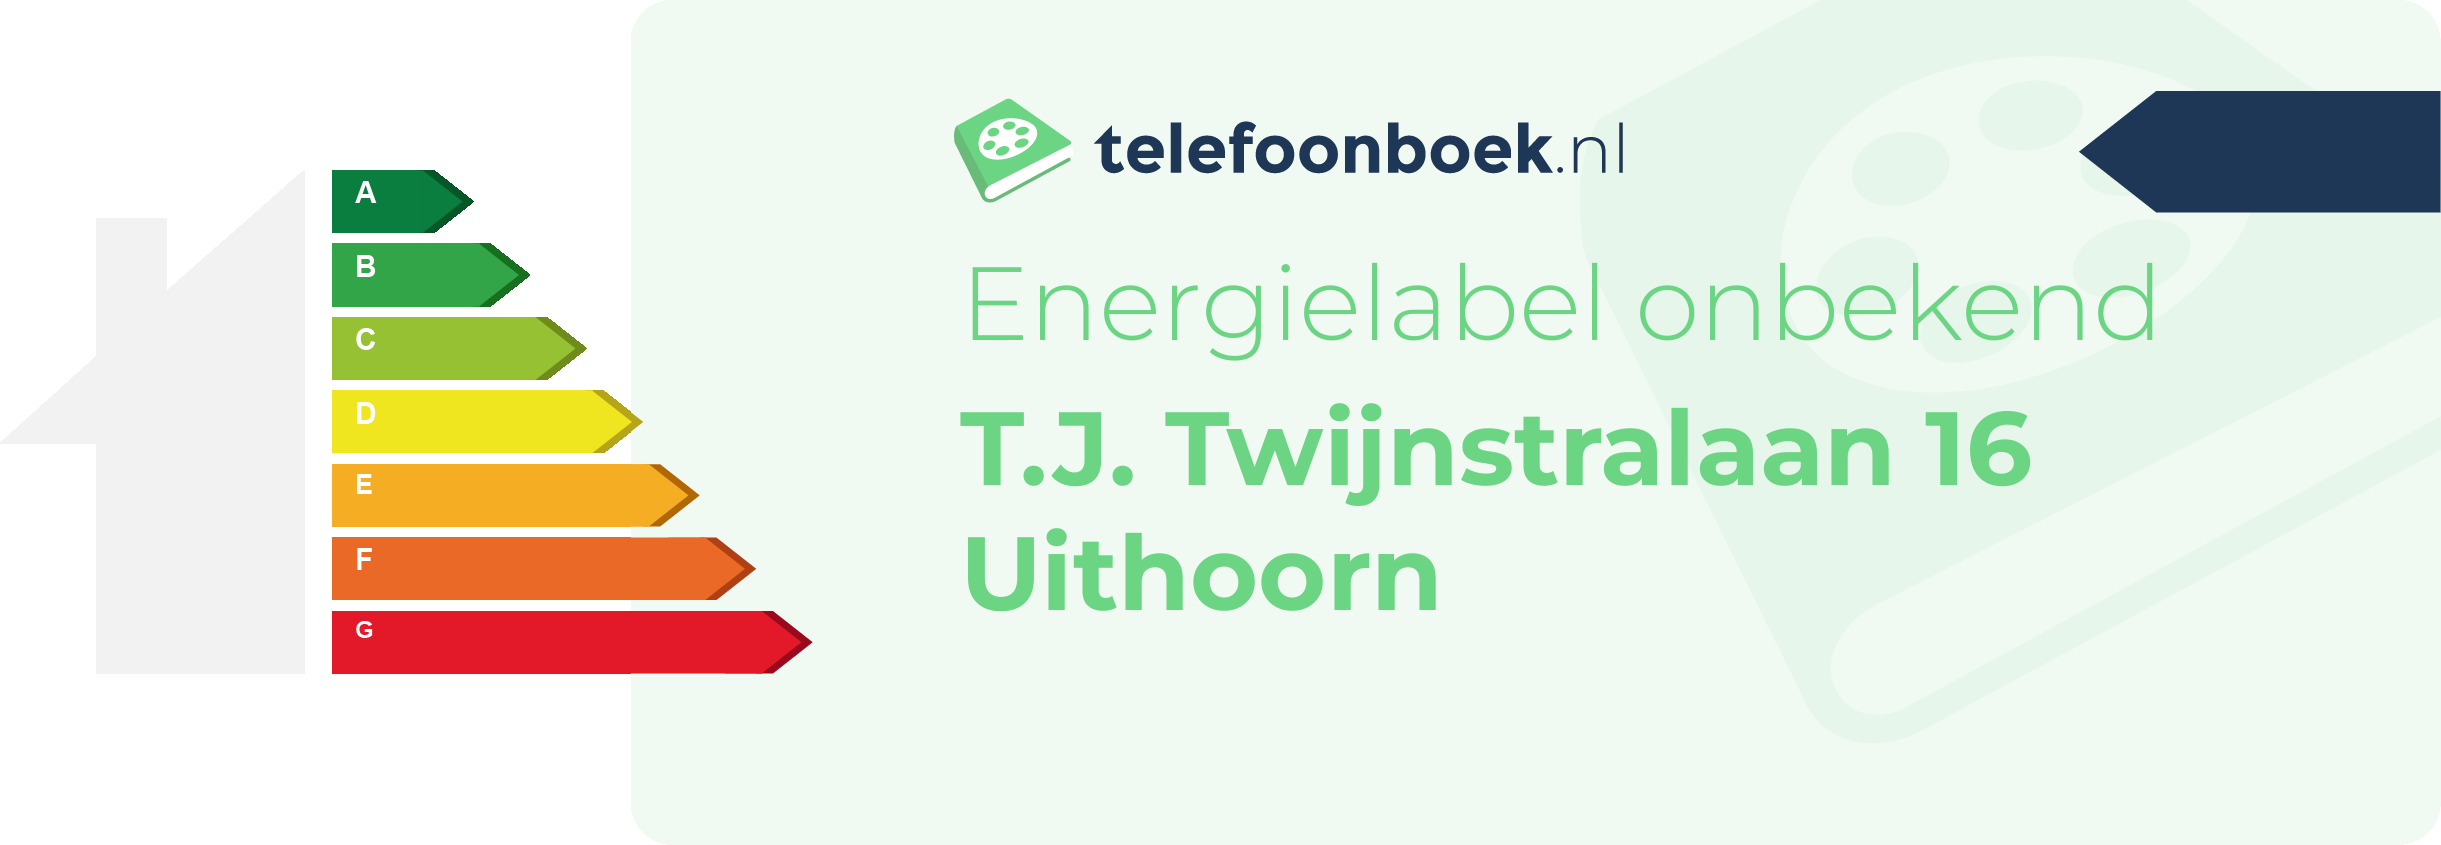 Energielabel T.J. Twijnstralaan 16 Uithoorn